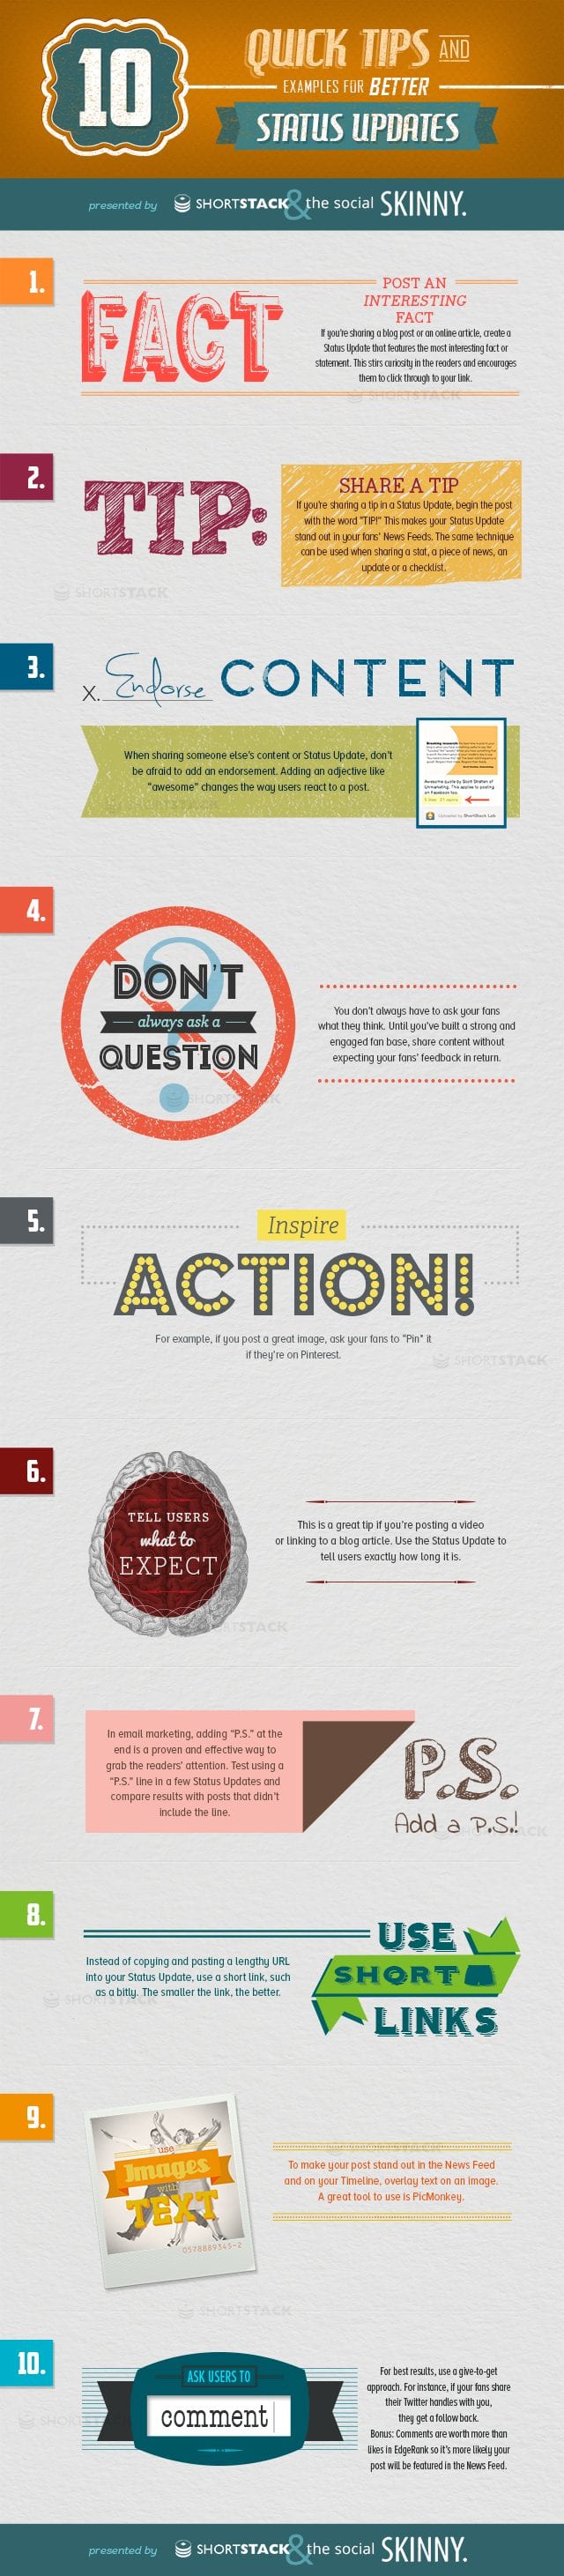 10 tips voor betere social mediaberichten [infographic]